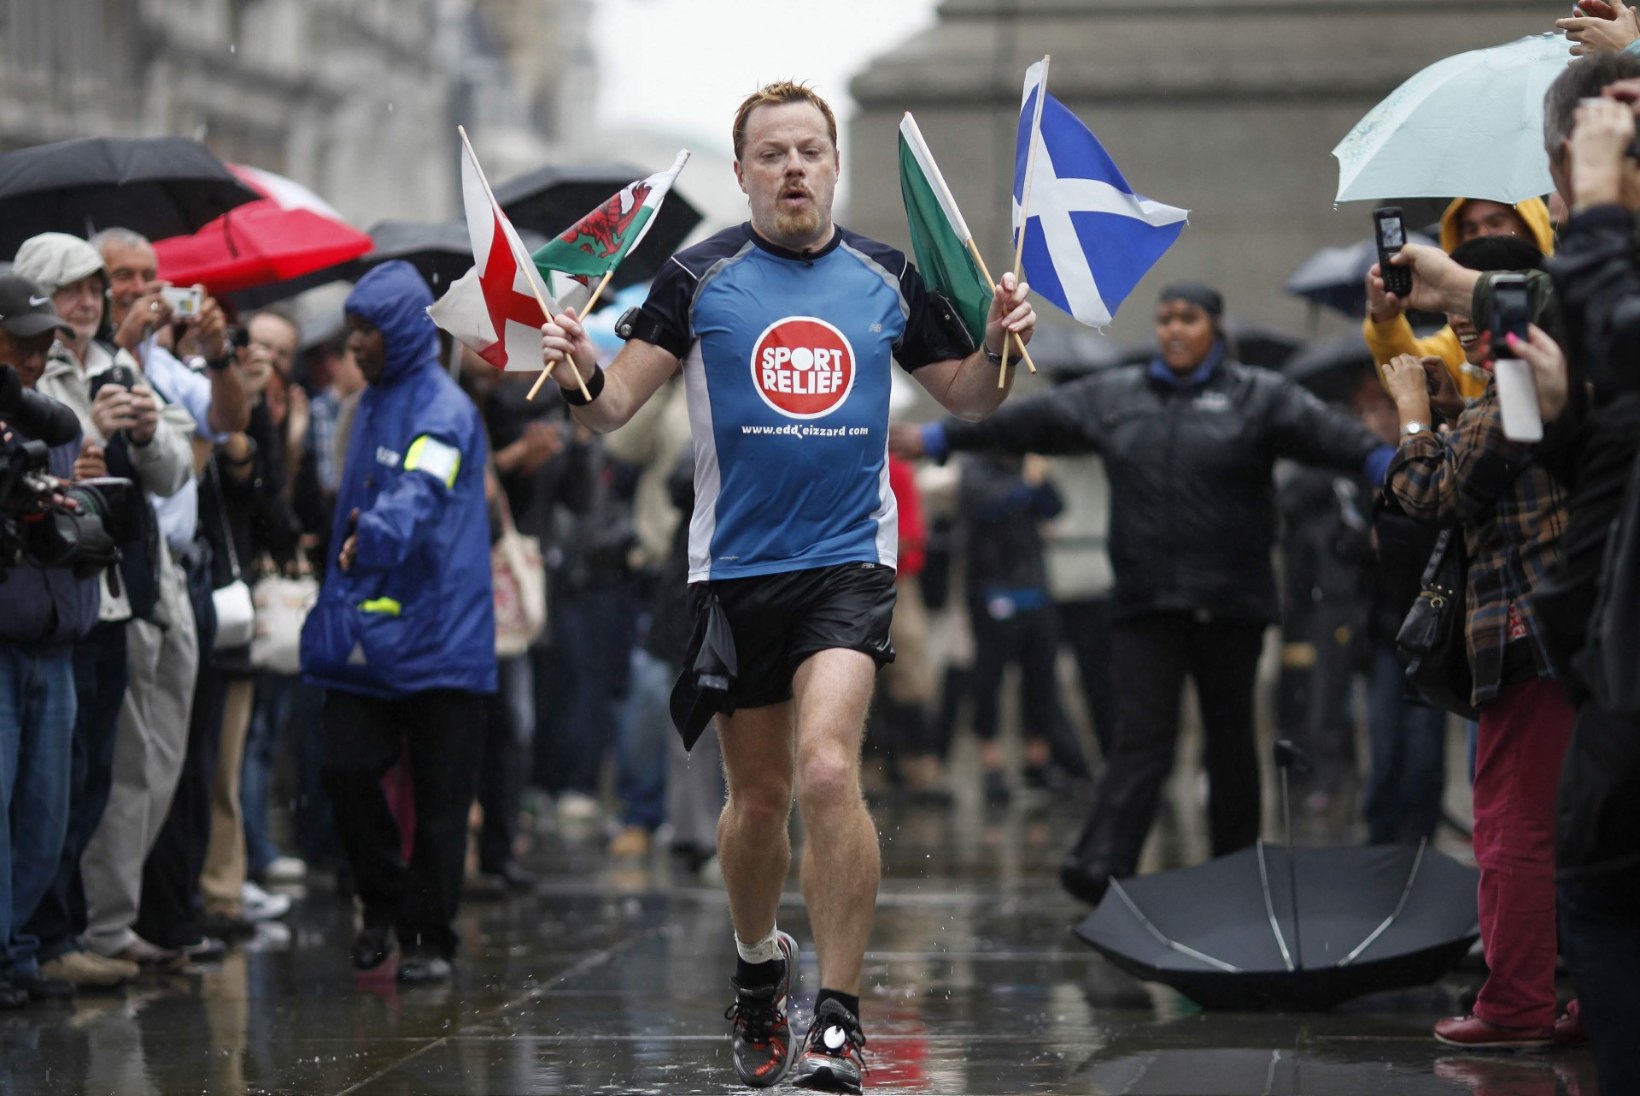 Briti koomik Eddie Izzard  plaanib suurejoonelist, kuid lausa eluohtlikku ettevõtmist – ta tahab 27 päevaga joosta 27 maratoni 